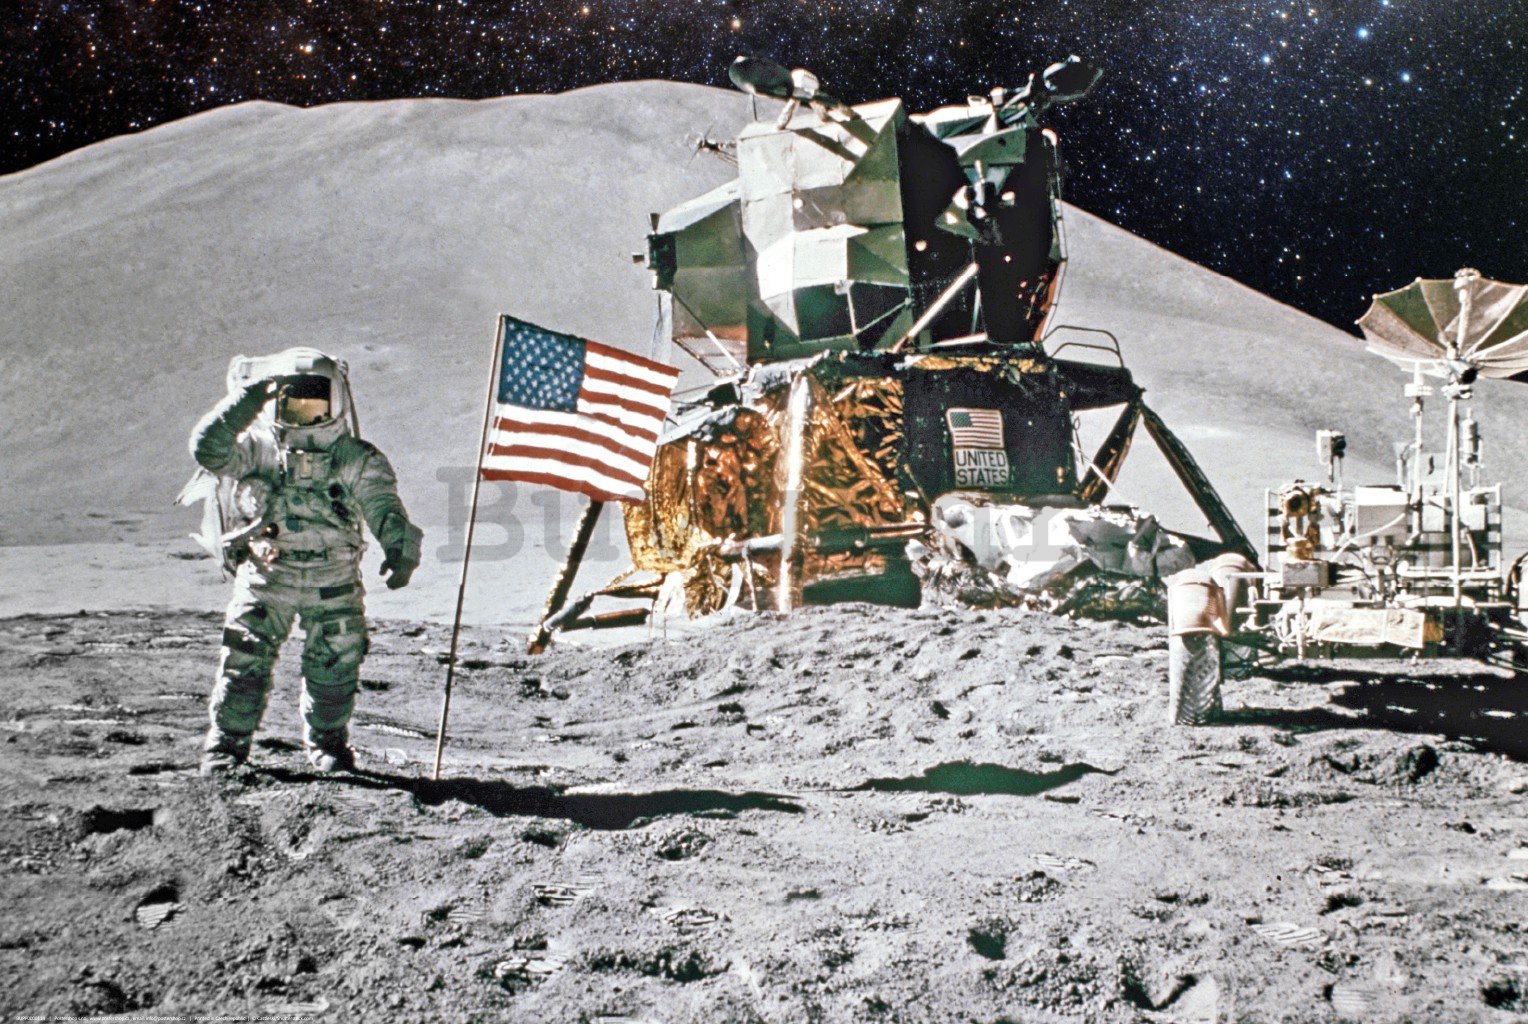 Poster: Slijetanje na Mjesec (Apollo 11)